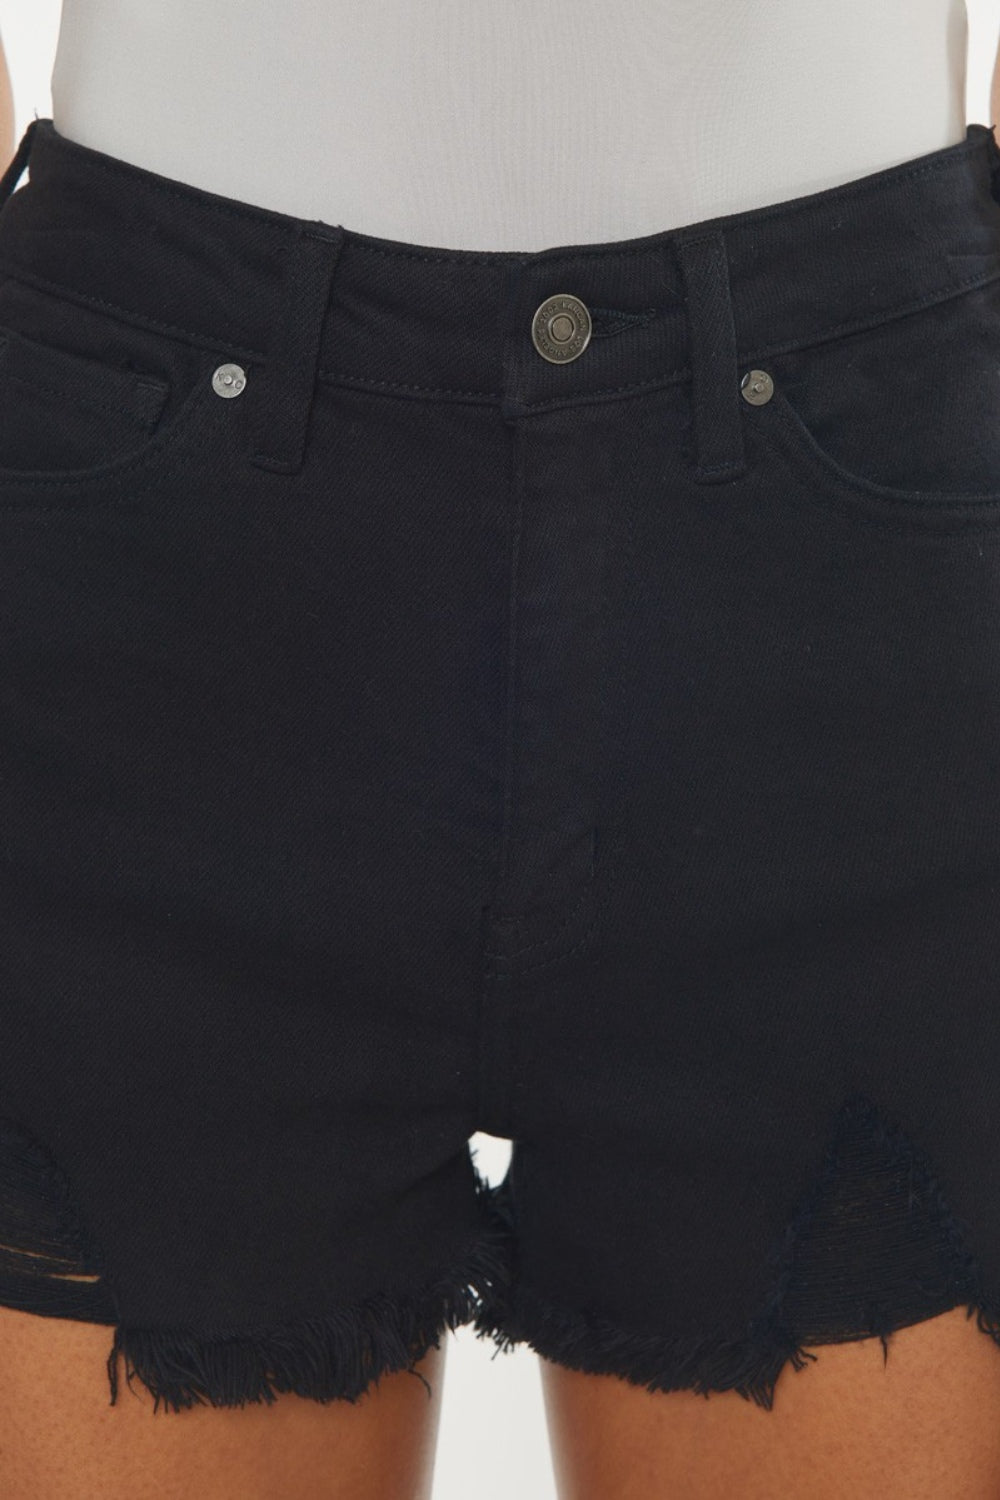 KanCan High Rise Waist Distressed Black Denim Cut-off Frayed Hem Jean Shorts